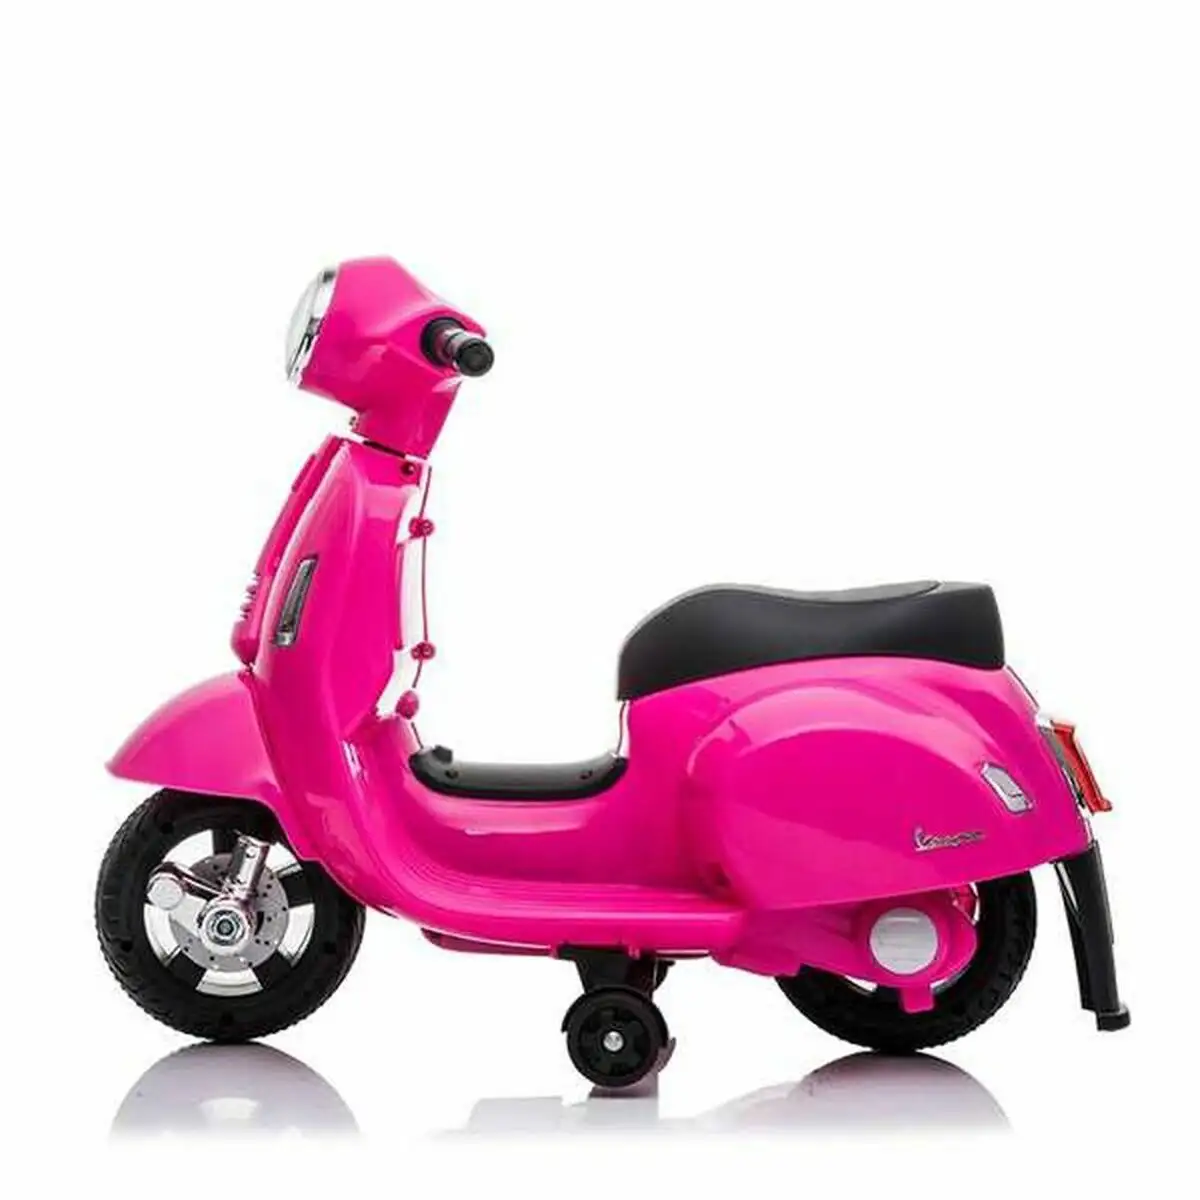 Motocyclette mini vespa rose_5929. DIAYTAR SENEGAL - Votre Passage vers l'Éclat et la Beauté. Explorez notre boutique en ligne et trouvez des produits qui subliment votre apparence et votre espace.